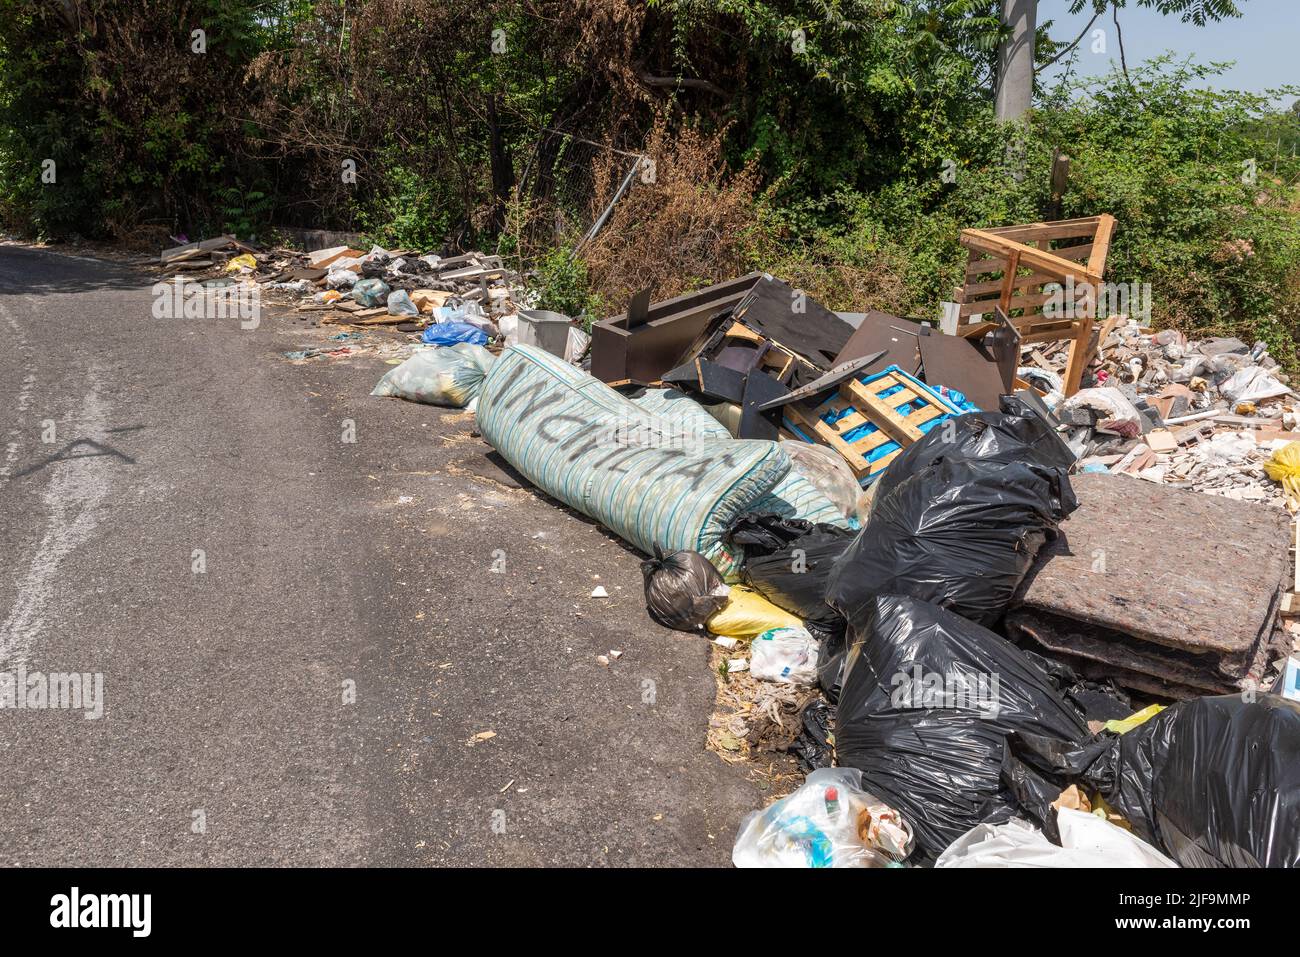 Montones de desechos domésticos arrojados por la carretera en el Monte Etna, Sicilia, Italia. Esta es una visión muy común en las zonas rurales Foto de stock